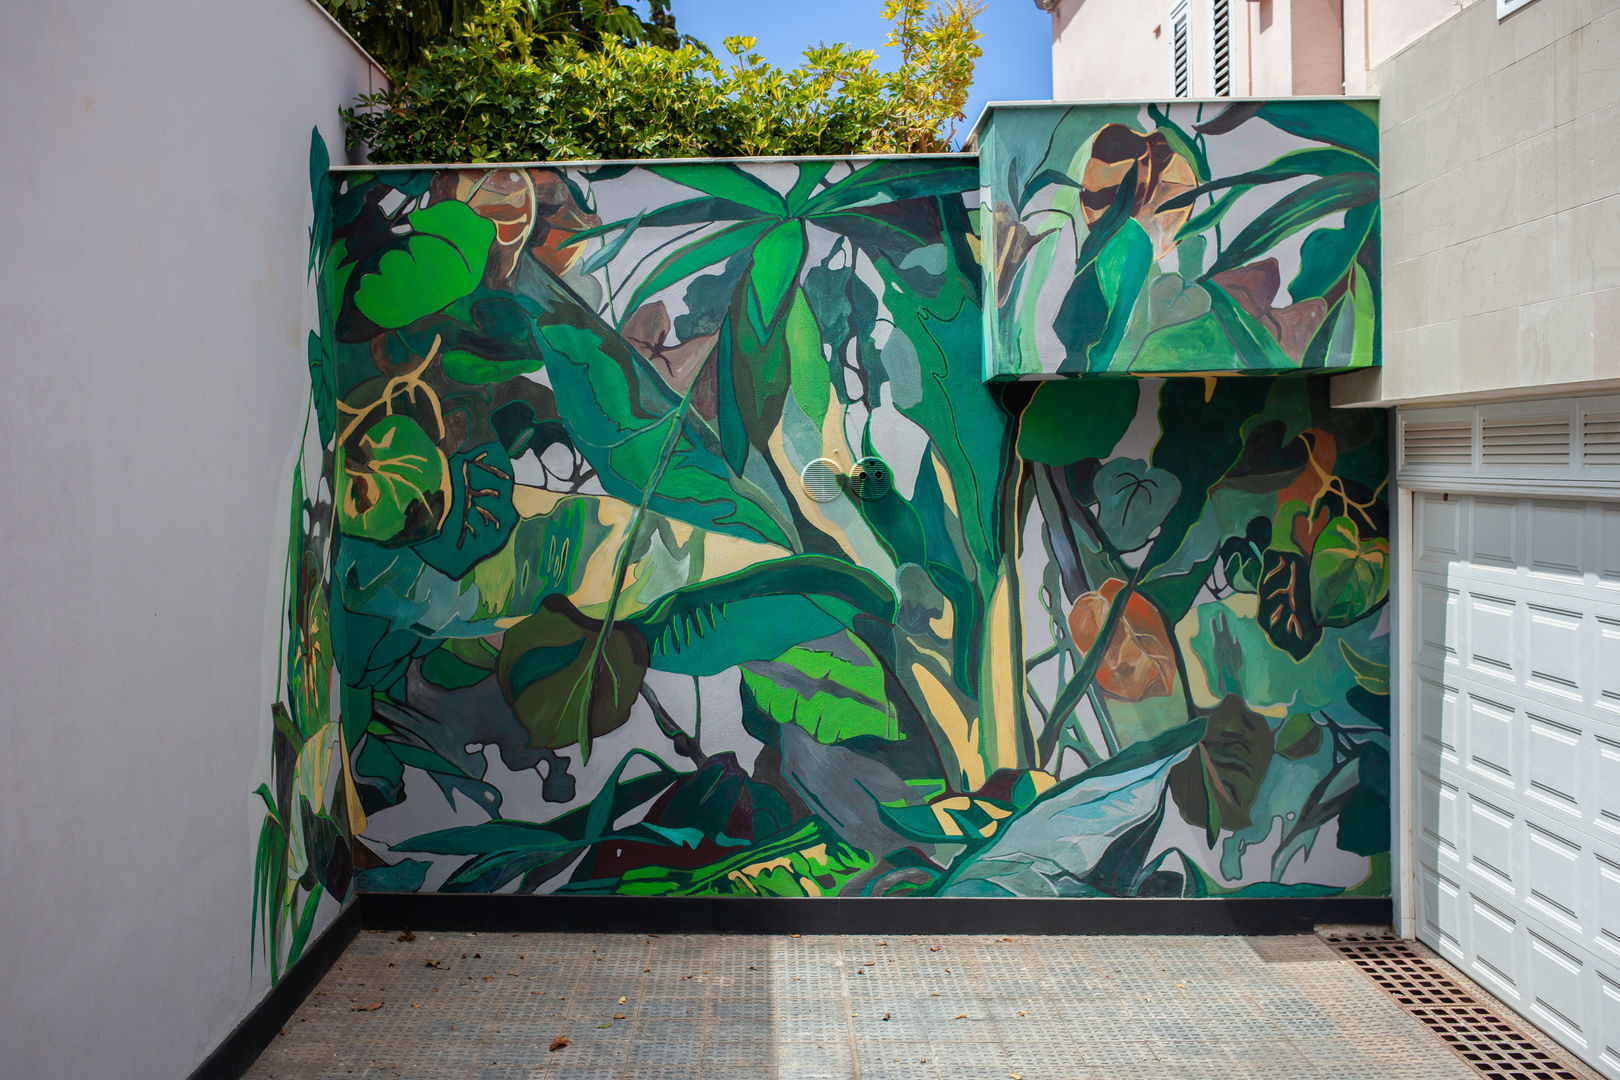 Wall painting "Tropical Garden", Diseño Libre Diseño Libre กำแพง